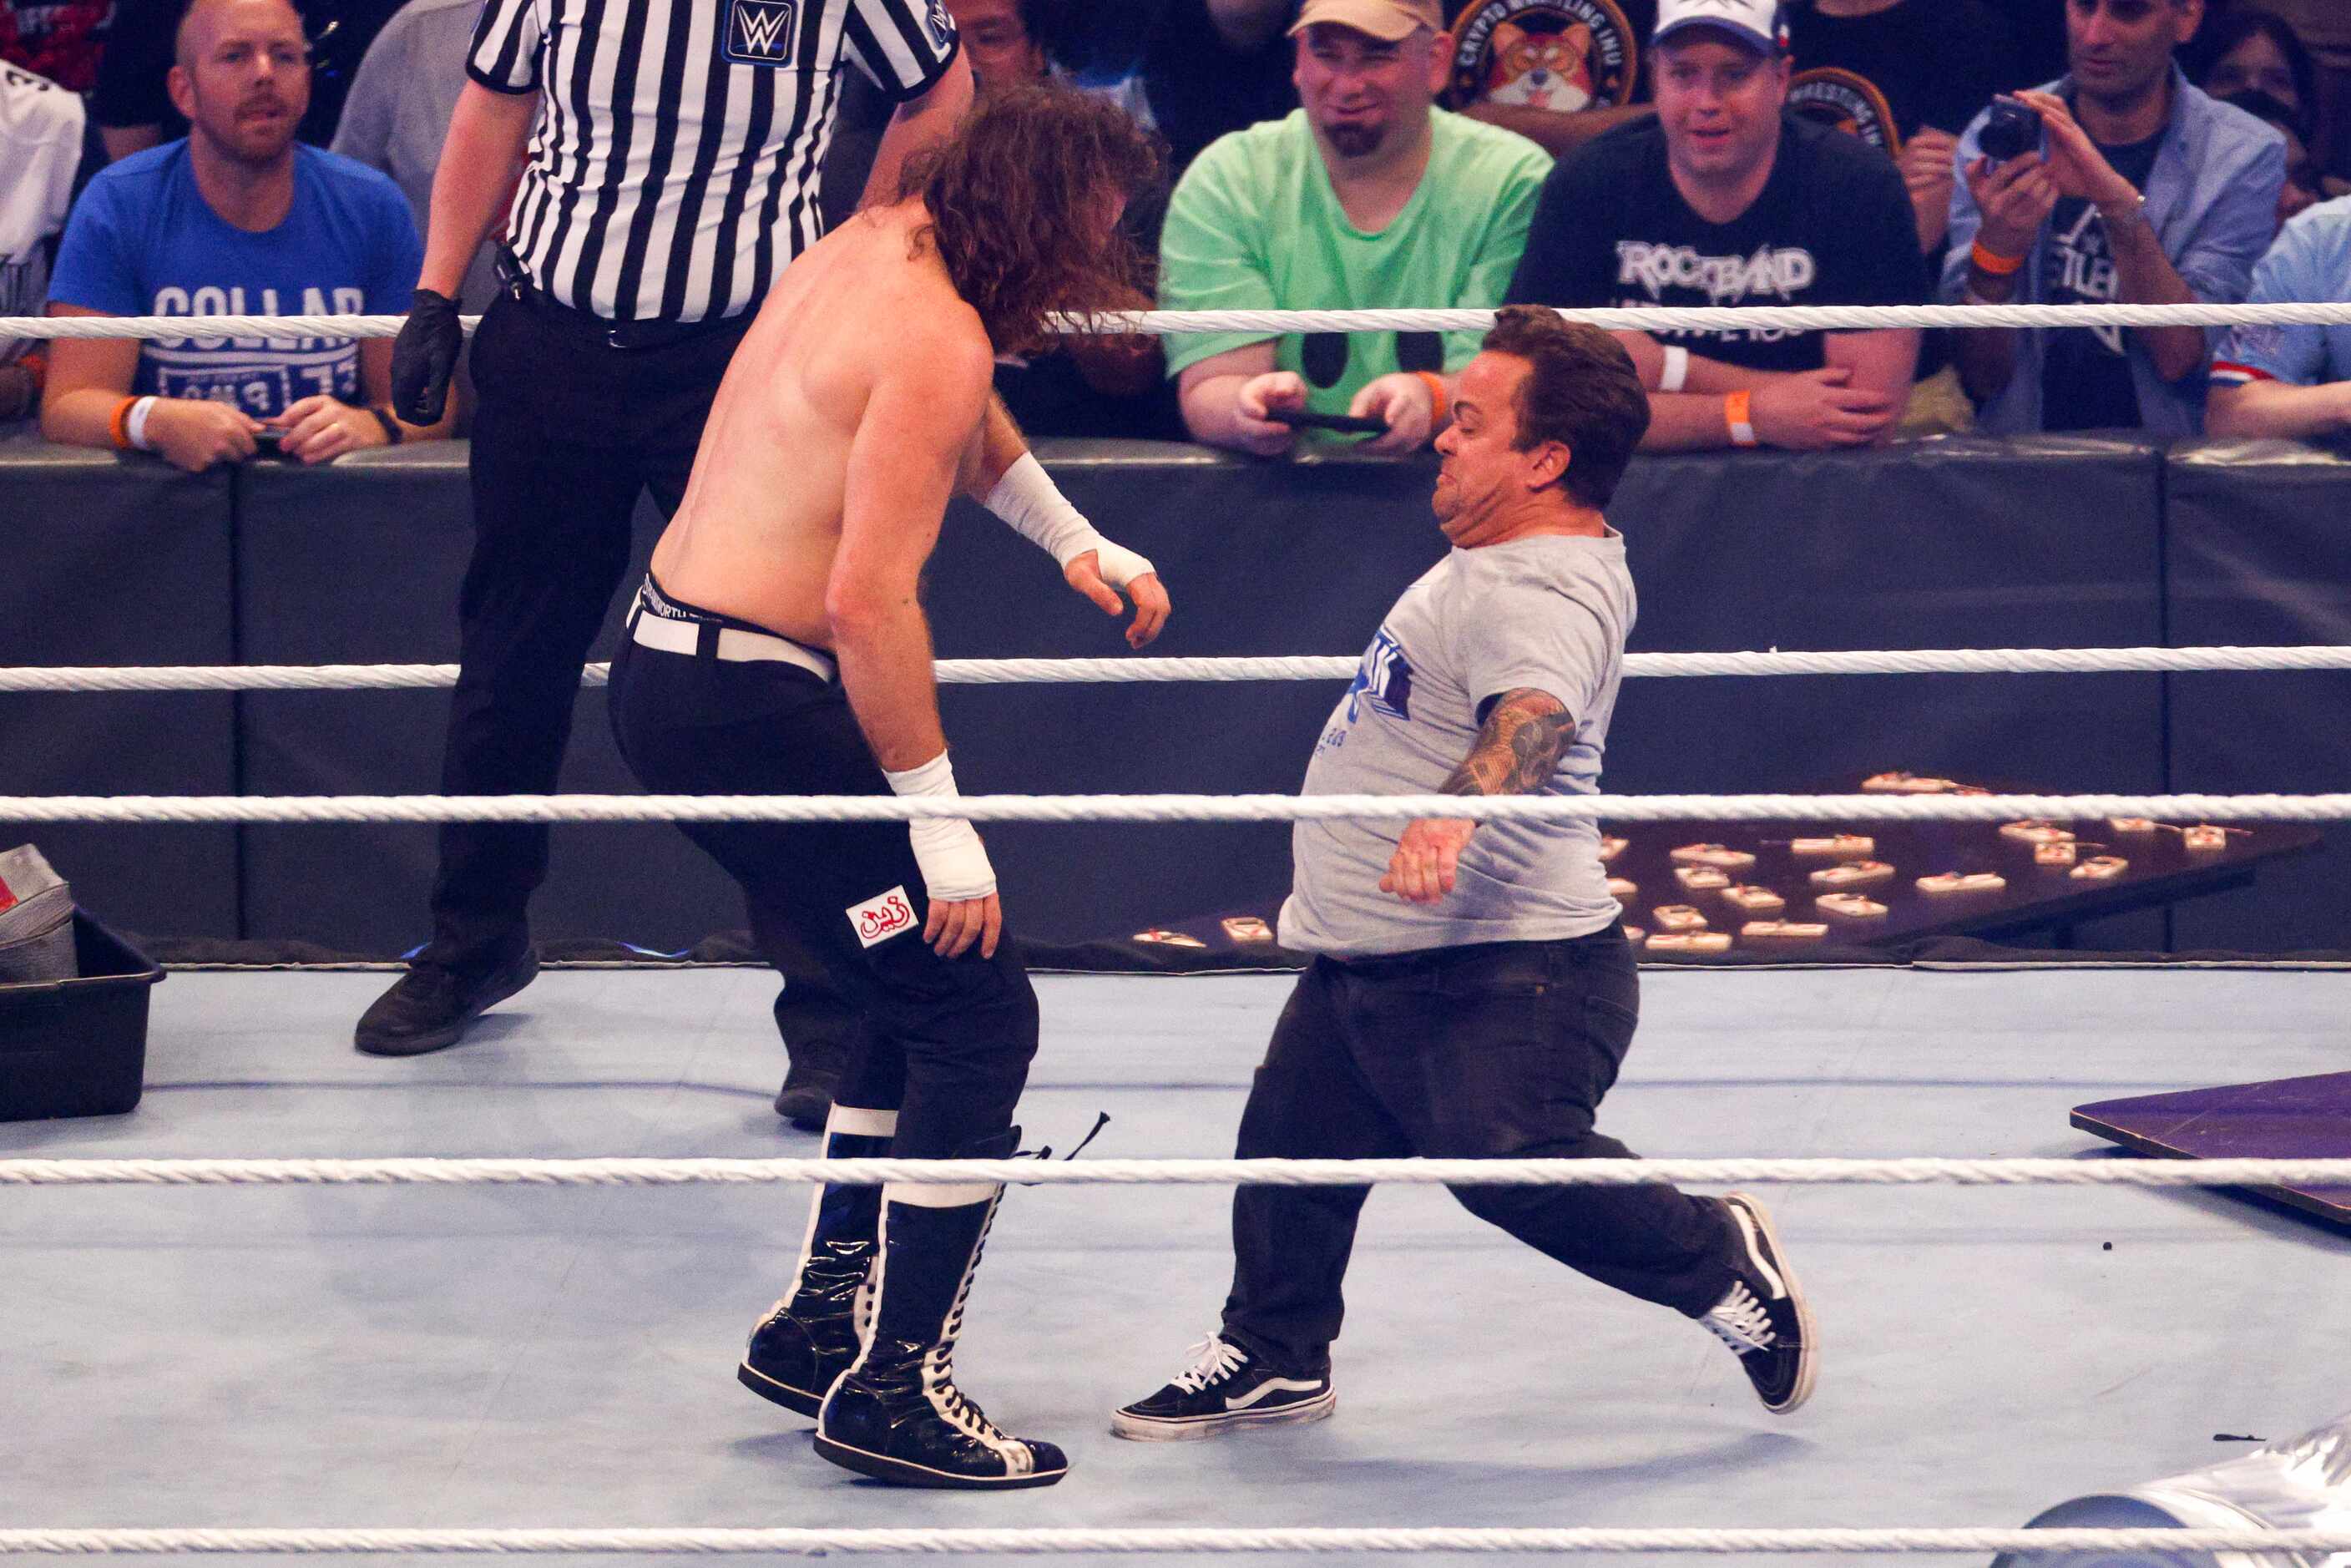 Wee Man kicks during a match at WrestleMania Sunday at AT&T Stadium in Arlington, Texas,...